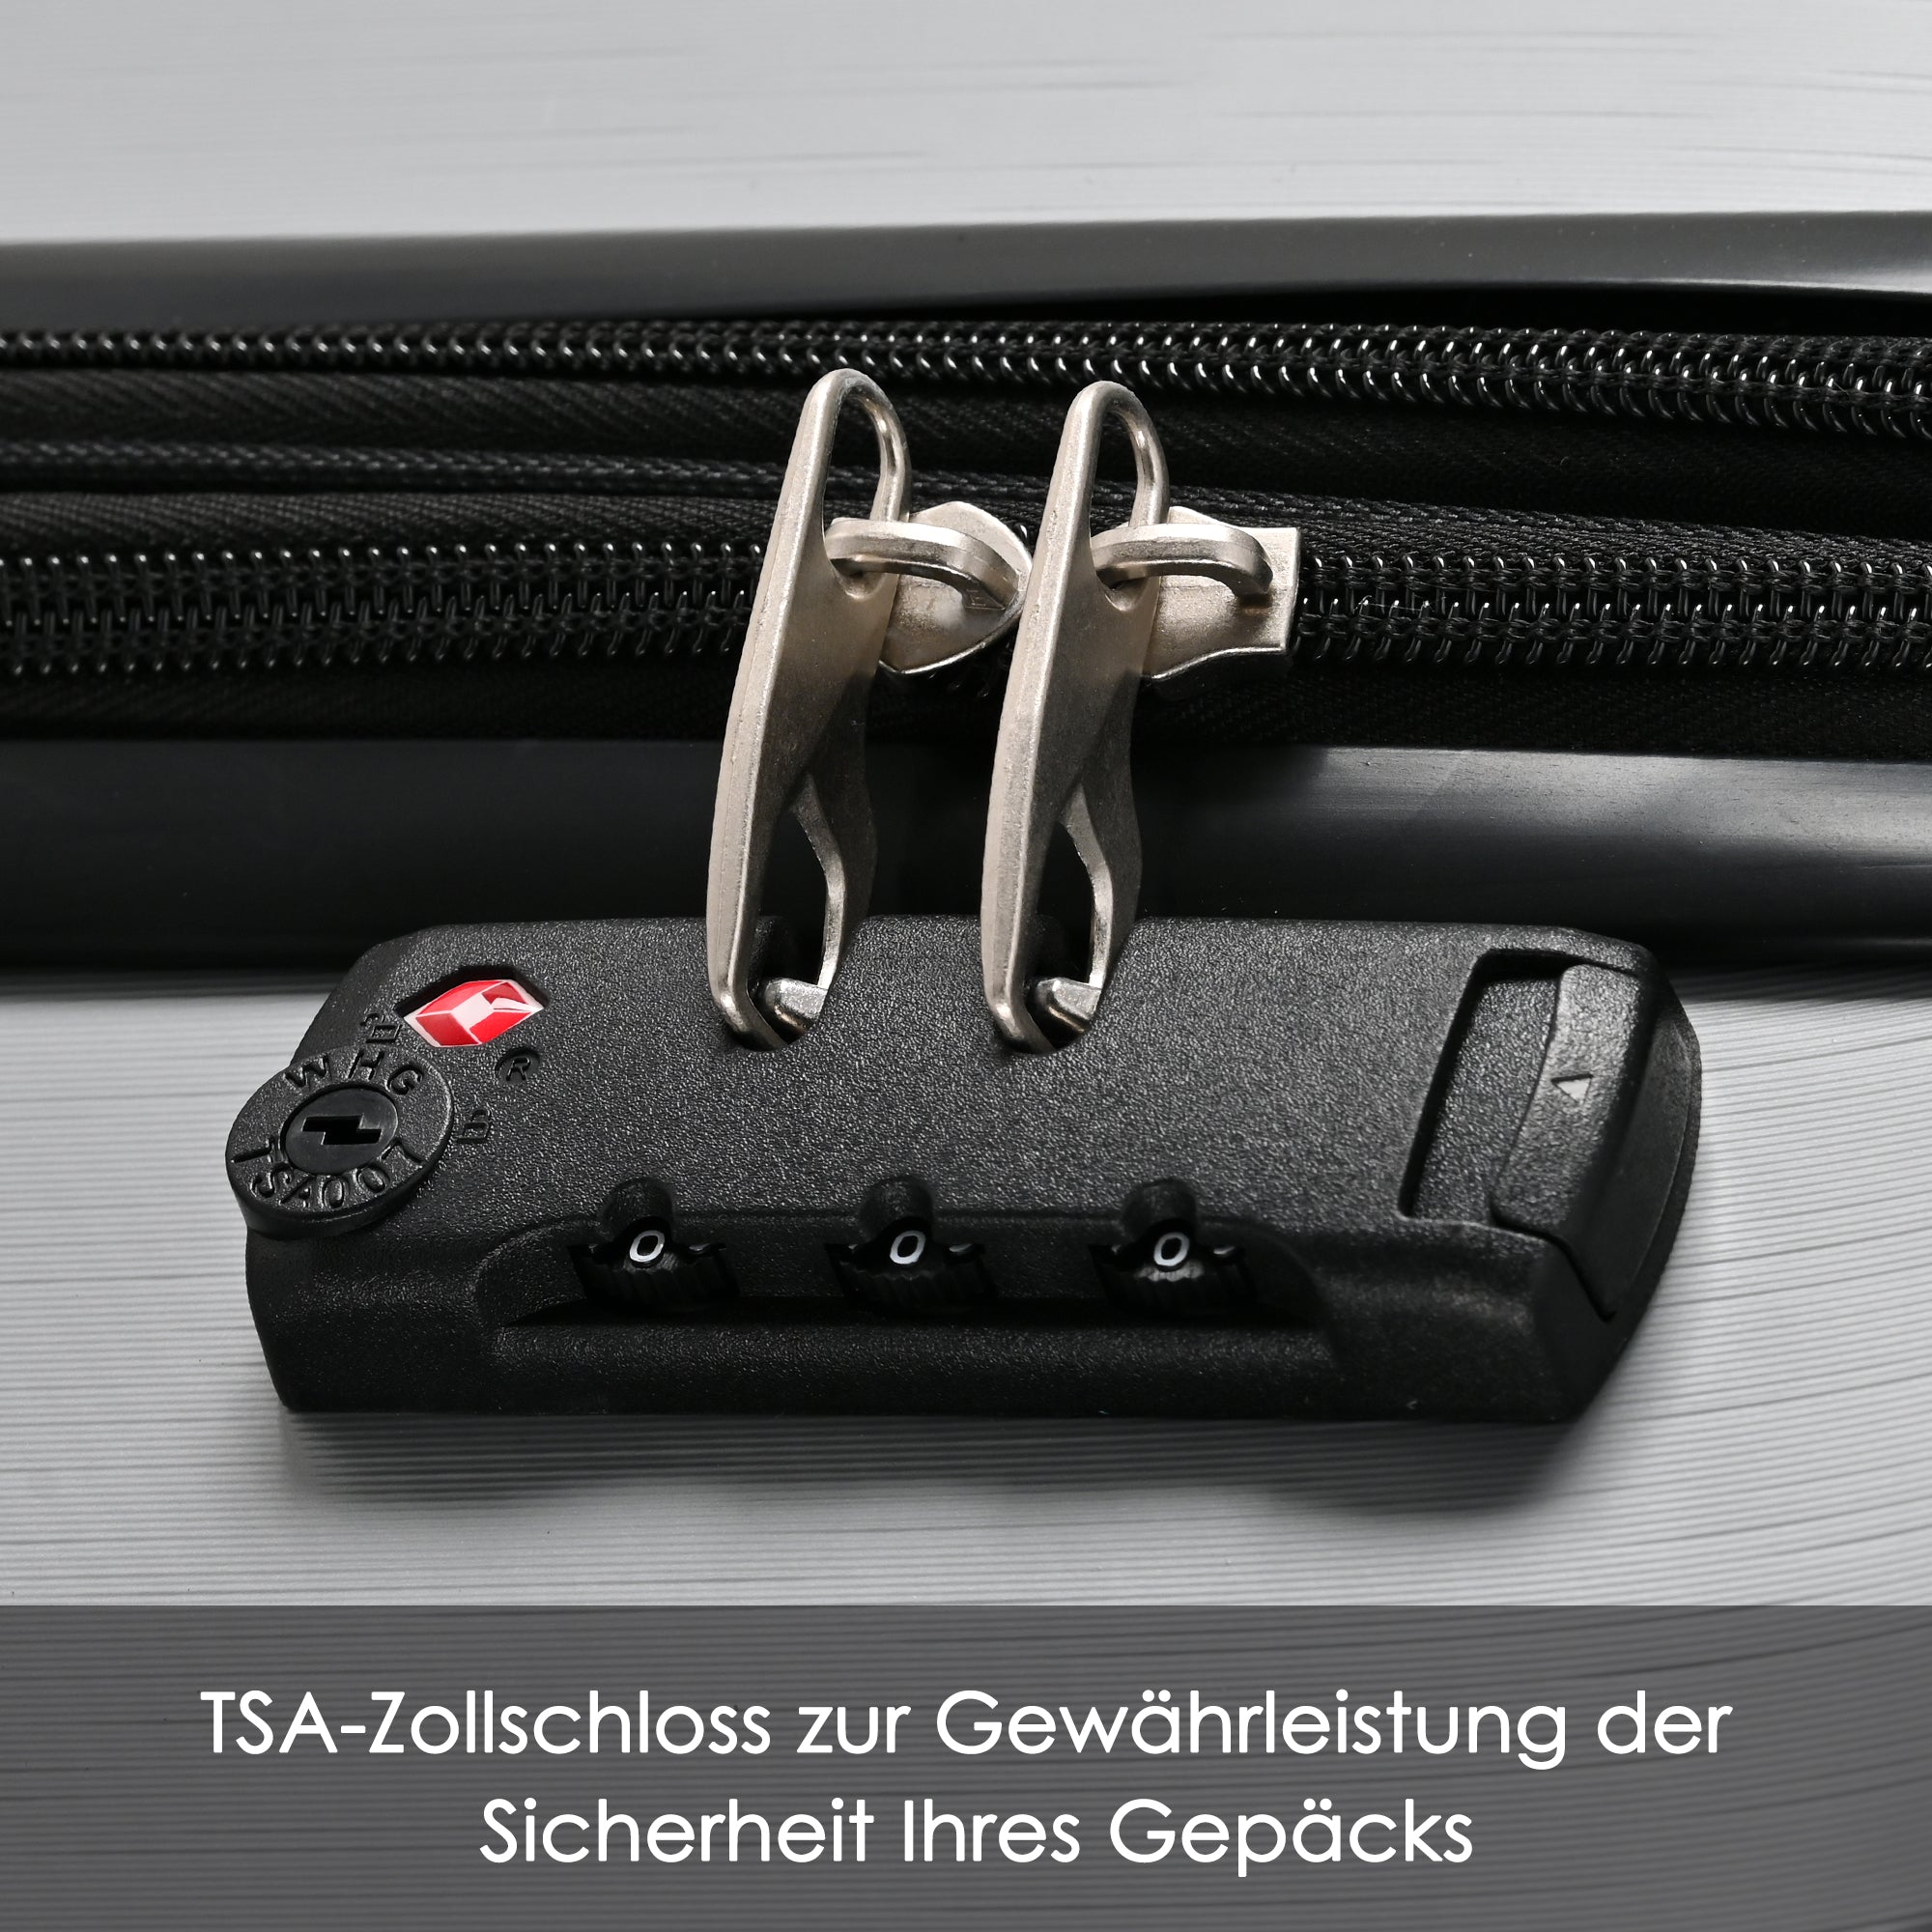 okwish Hartschalen-Koffer, Rollkoffer, Reisekoffer, Handgepäck 4 Rollen, ABS-Material, TSA Zollschloss, 56.5*37.5*22.5 cm, Grau,M